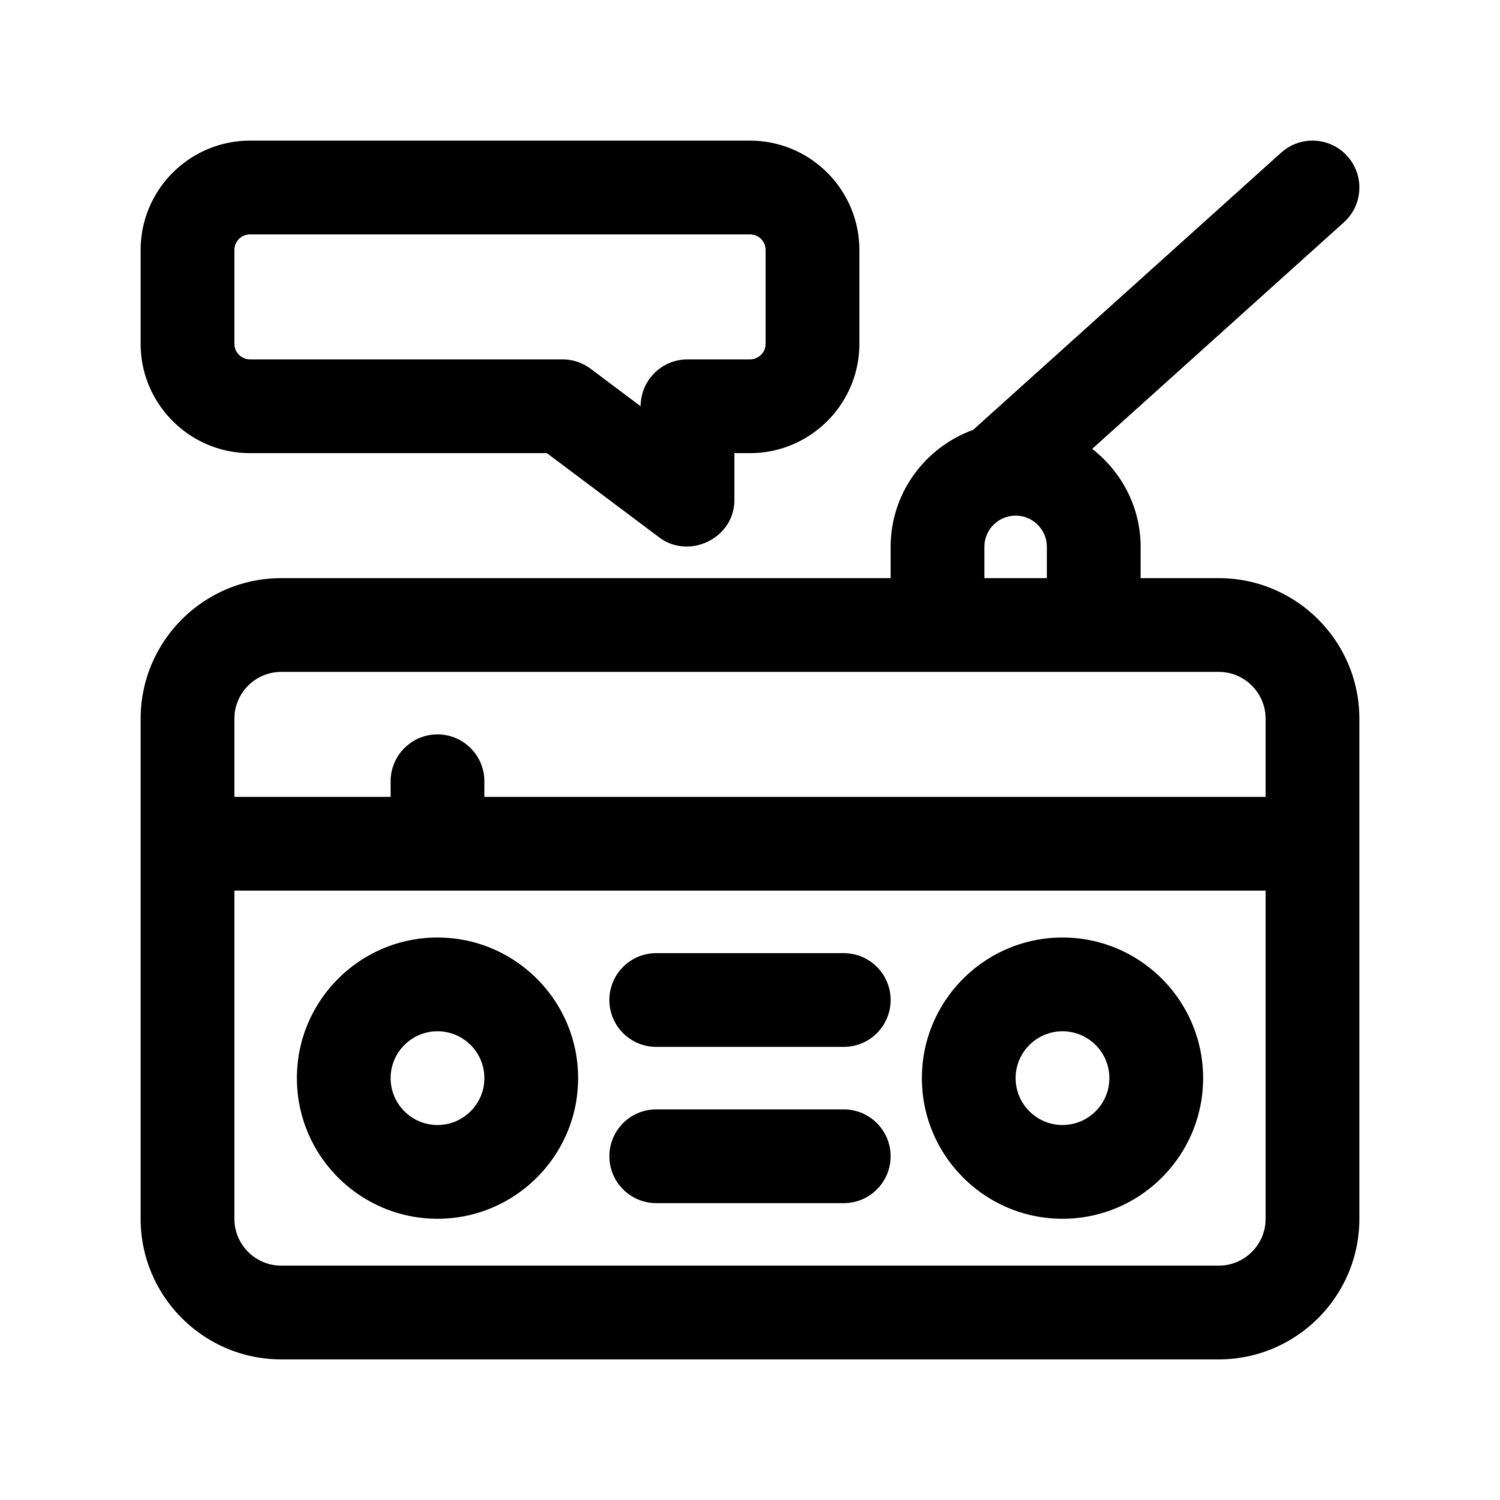 Особенности и преимуществa радио